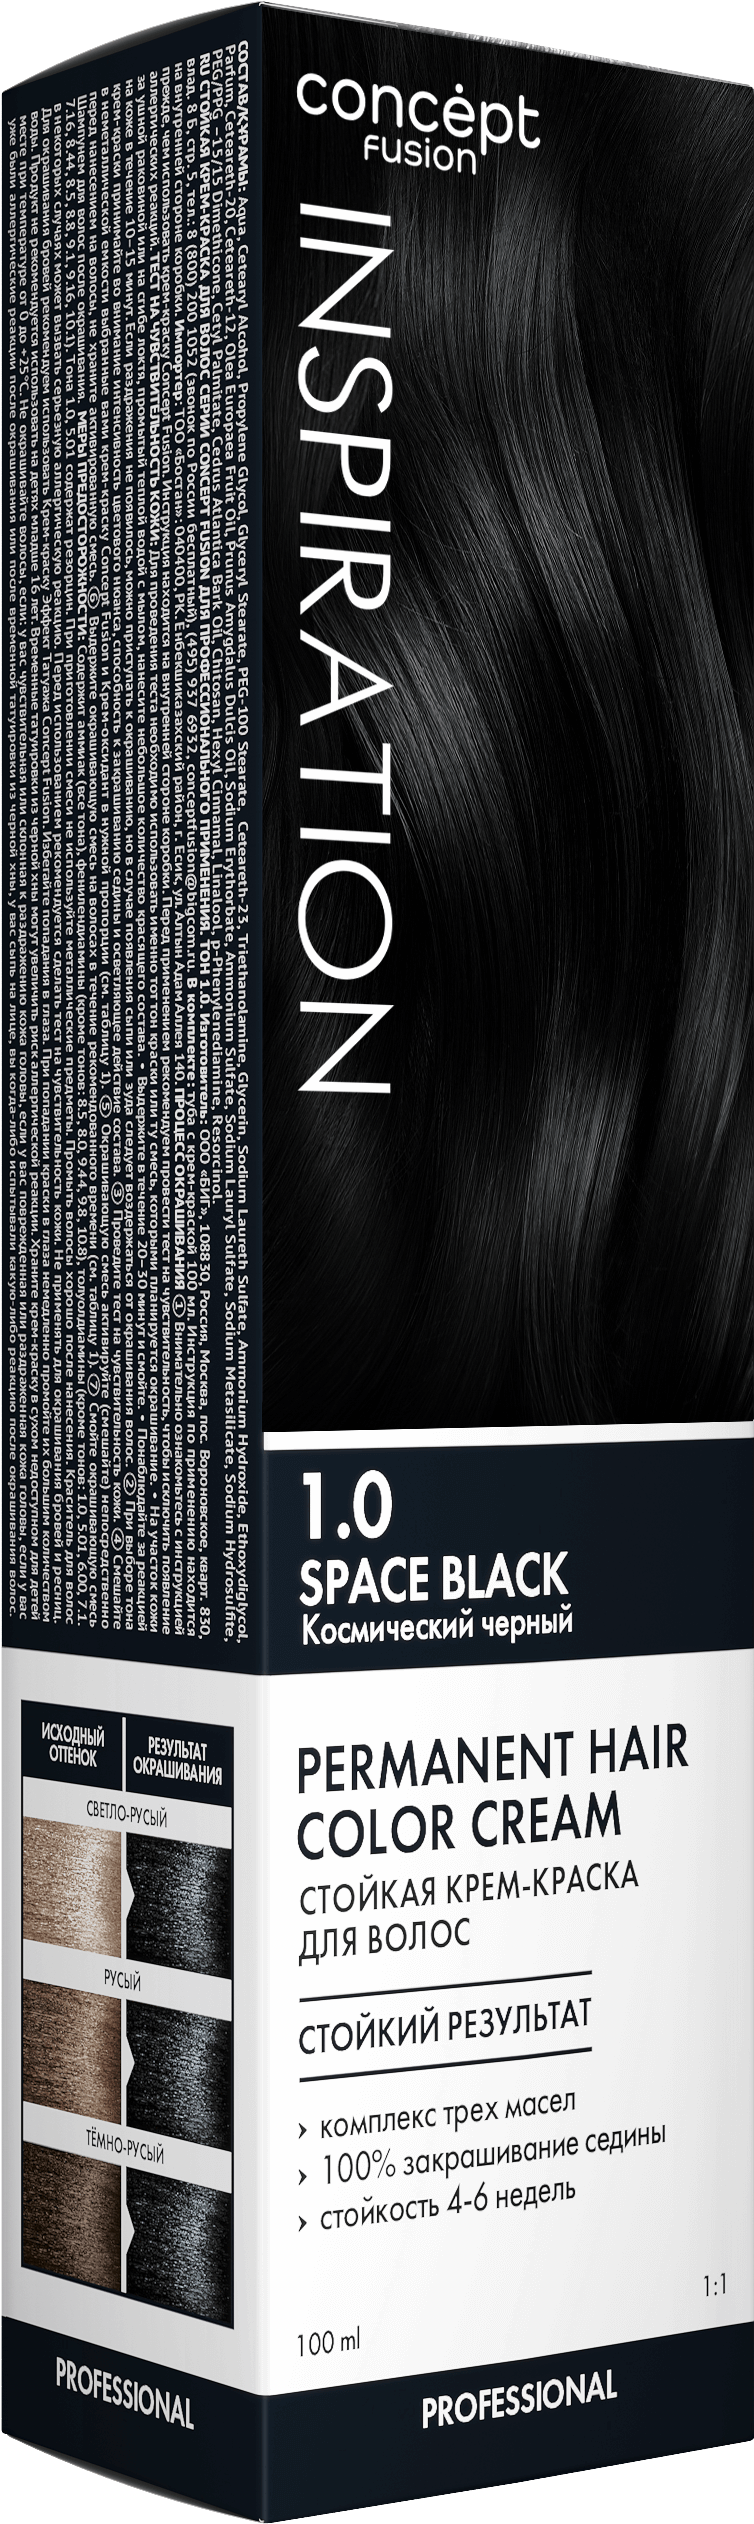 Крем-краска Concept Fusion Inspiration космический чёрный, №1.0, 100 мл